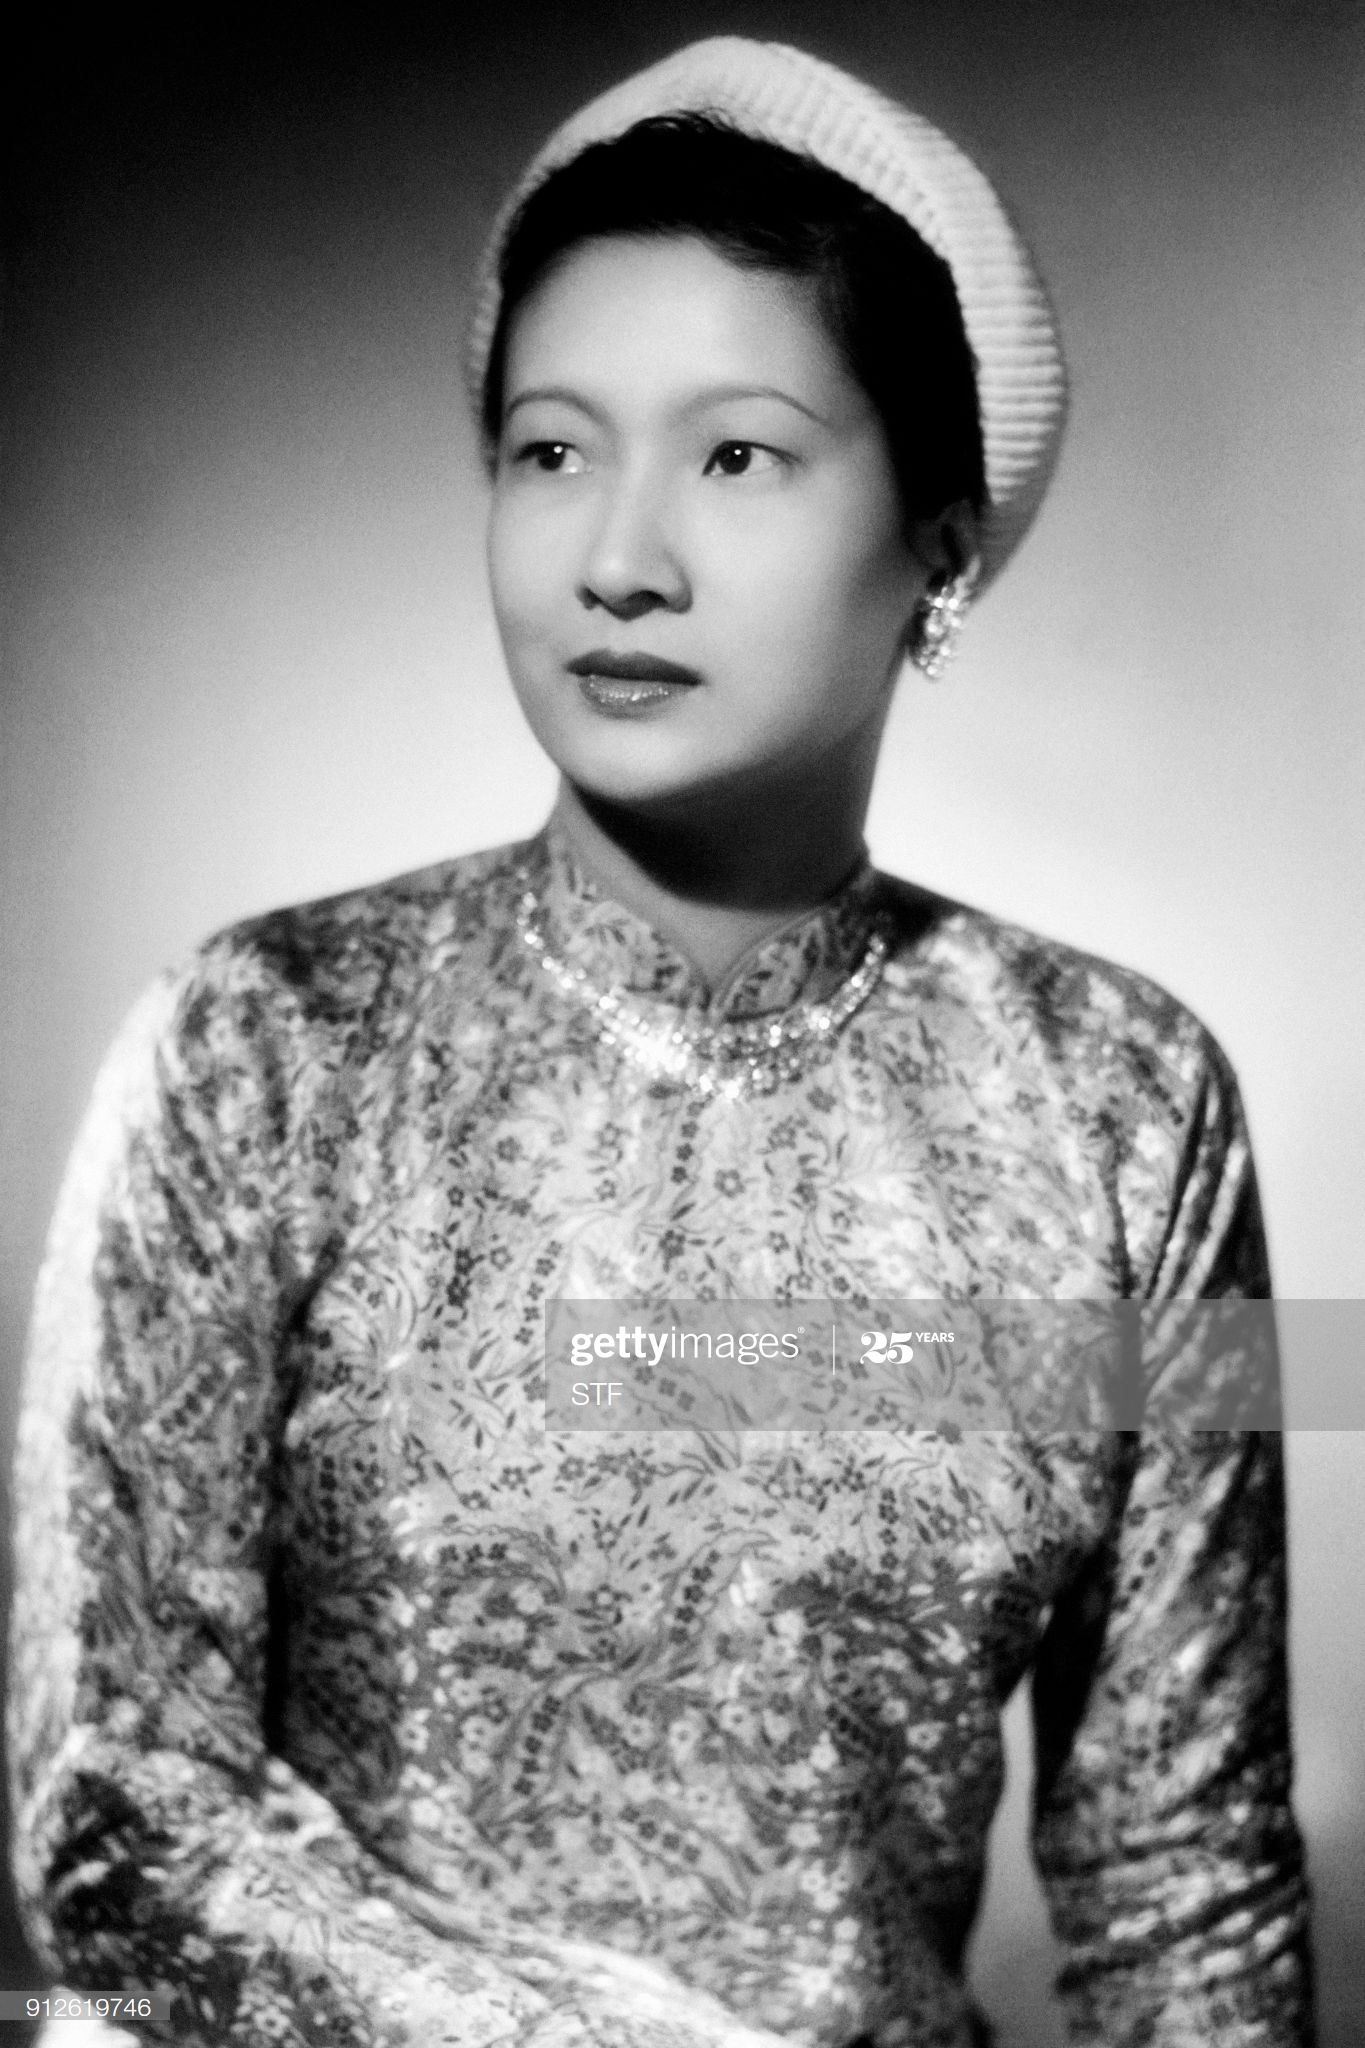 Chân dung Nam Phương Hoàng hậu năm 1940